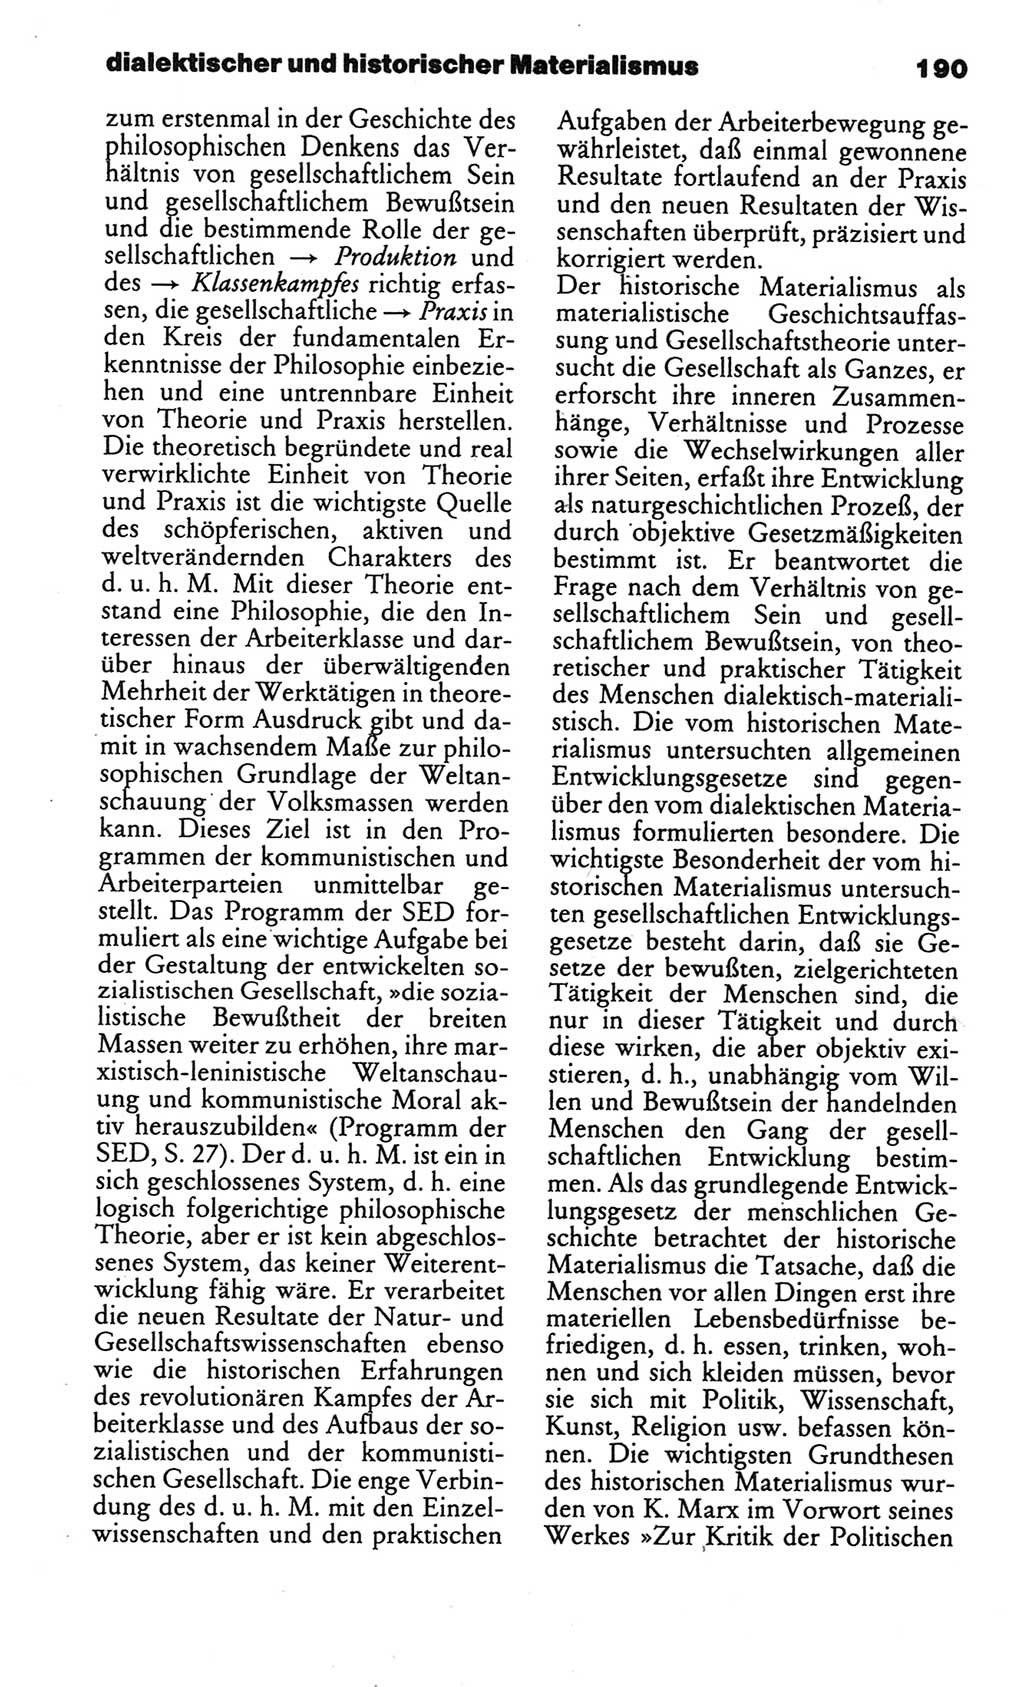 Kleines politisches Wörterbuch [Deutsche Demokratische Republik (DDR)] 1986, Seite 190 (Kl. pol. Wb. DDR 1986, S. 190)